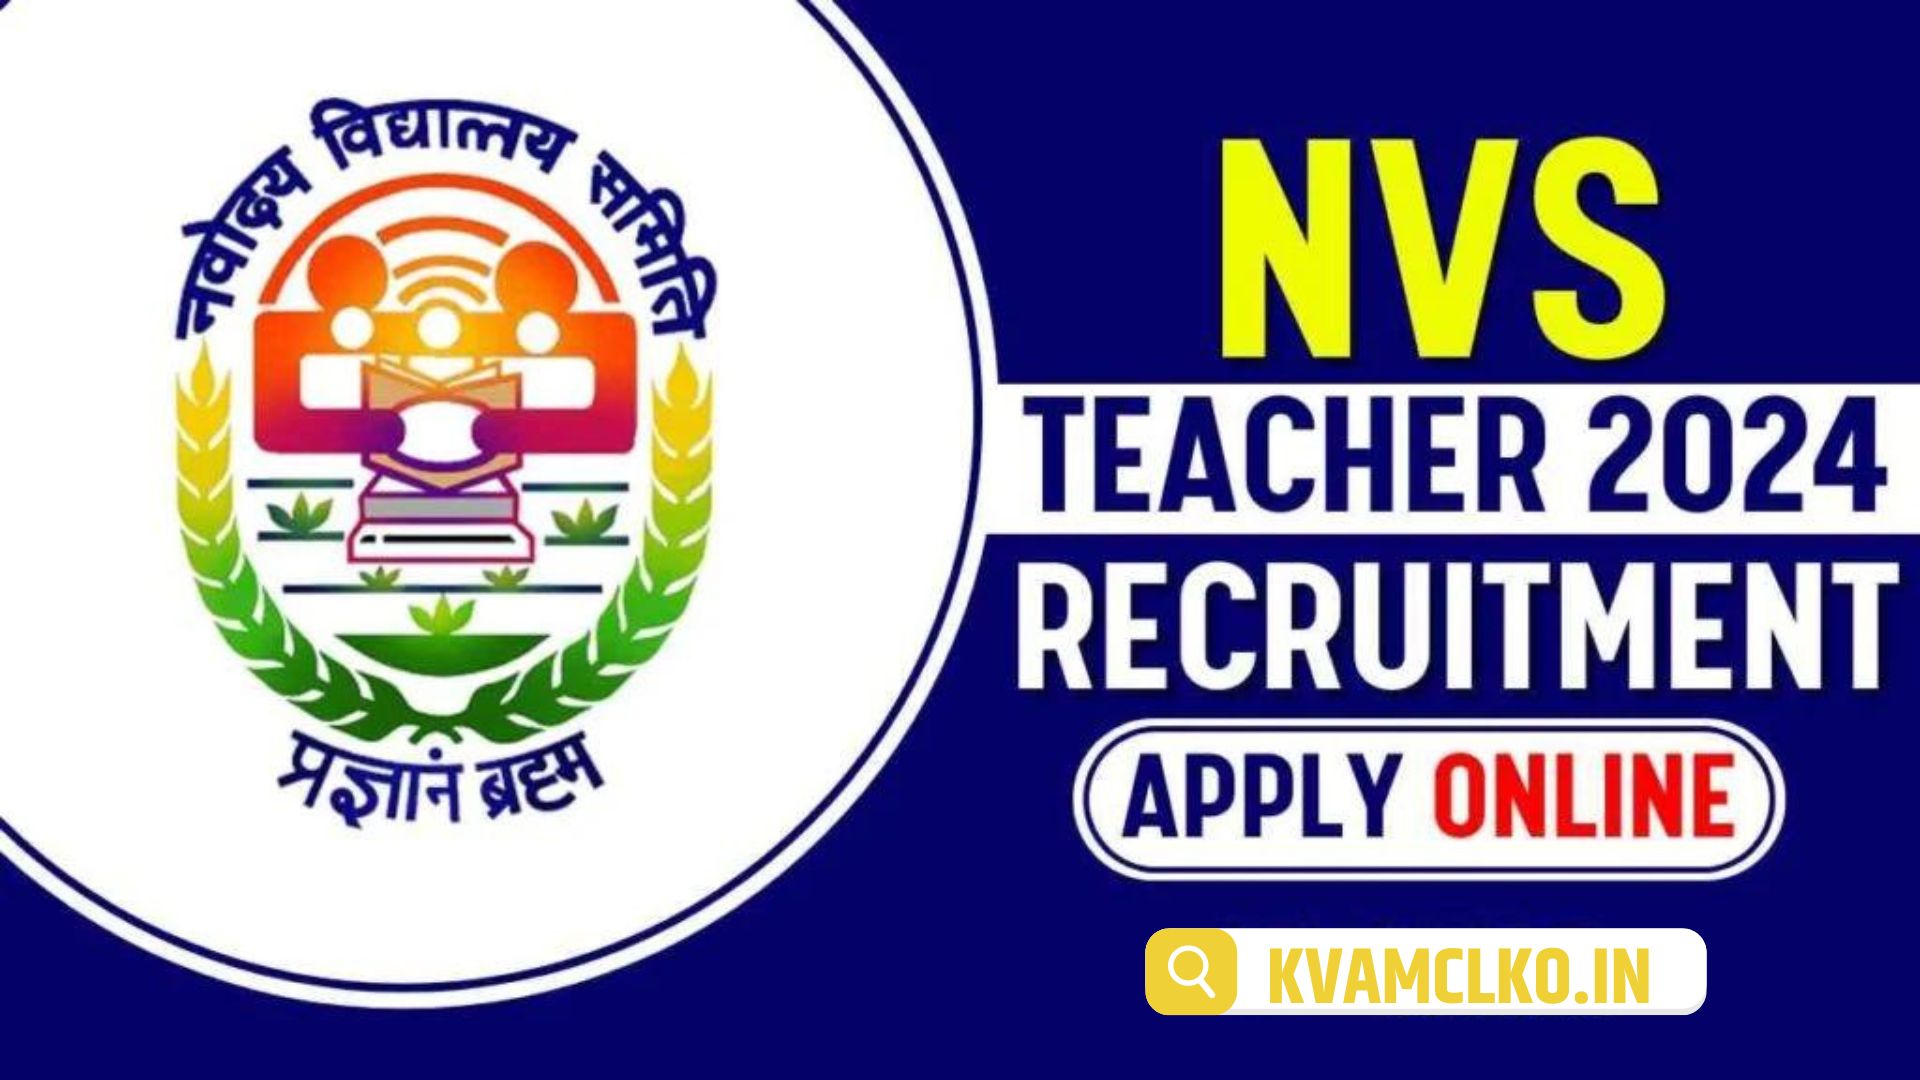 NVS Teacher Recruitment 2024